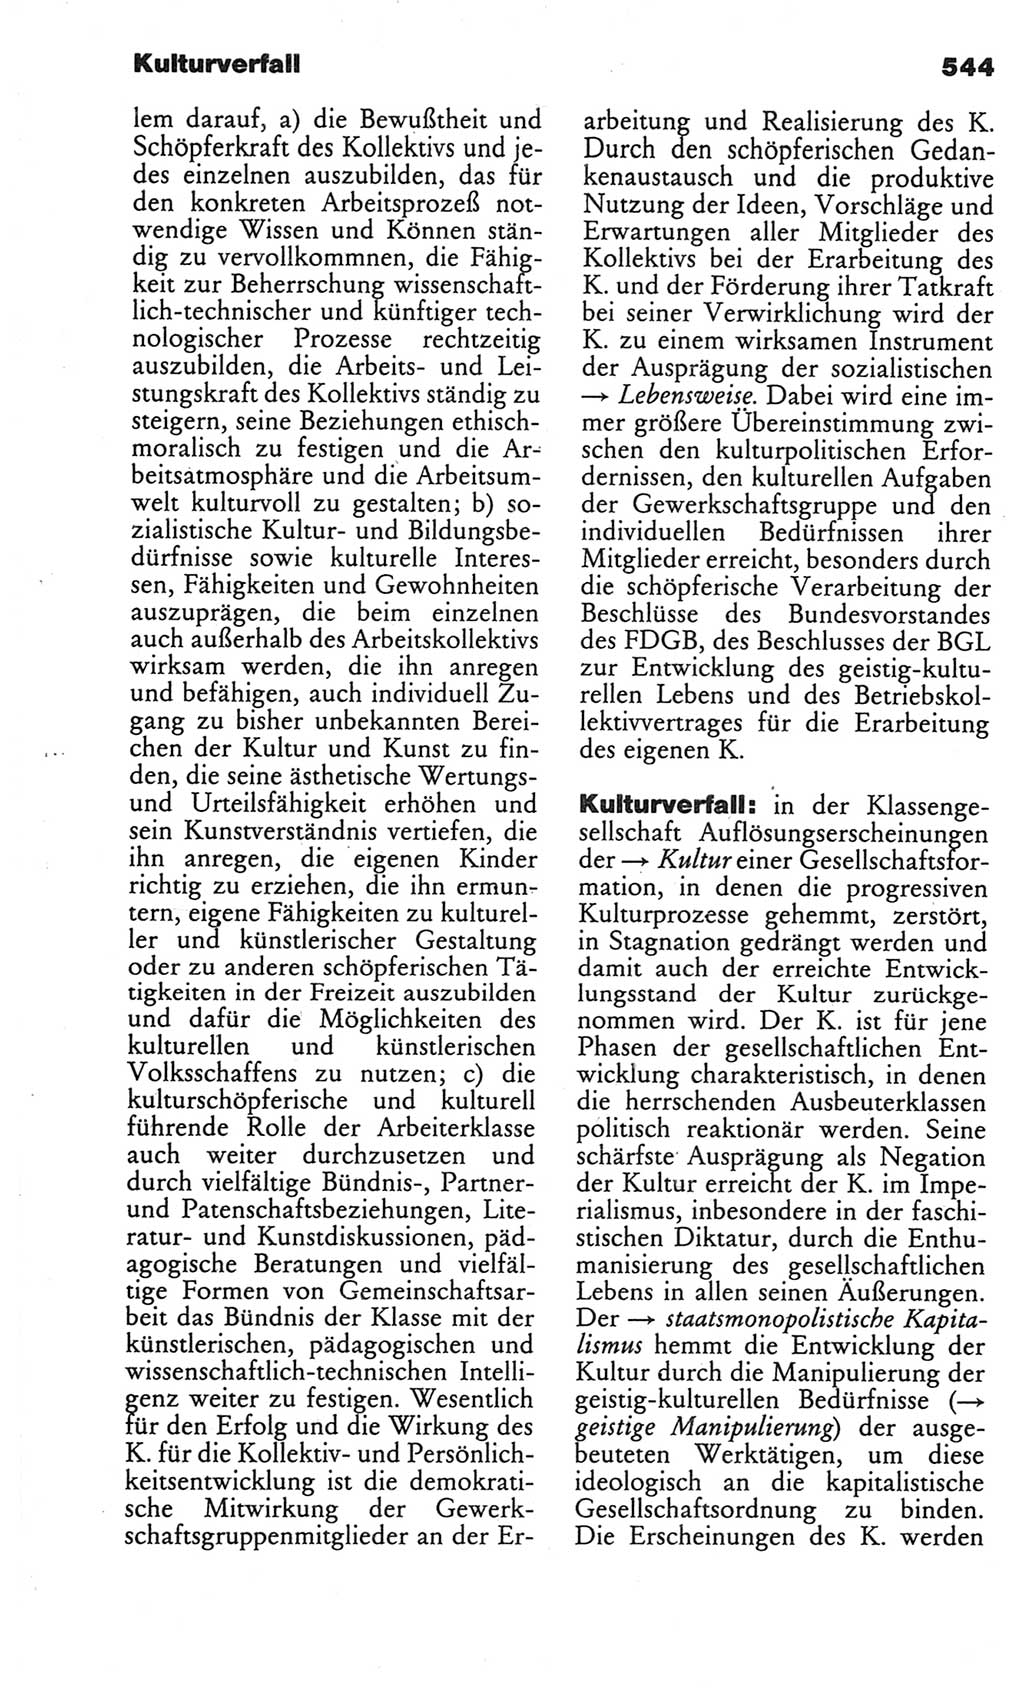 Kleines politisches Wörterbuch [Deutsche Demokratische Republik (DDR)] 1986, Seite 544 (Kl. pol. Wb. DDR 1986, S. 544)